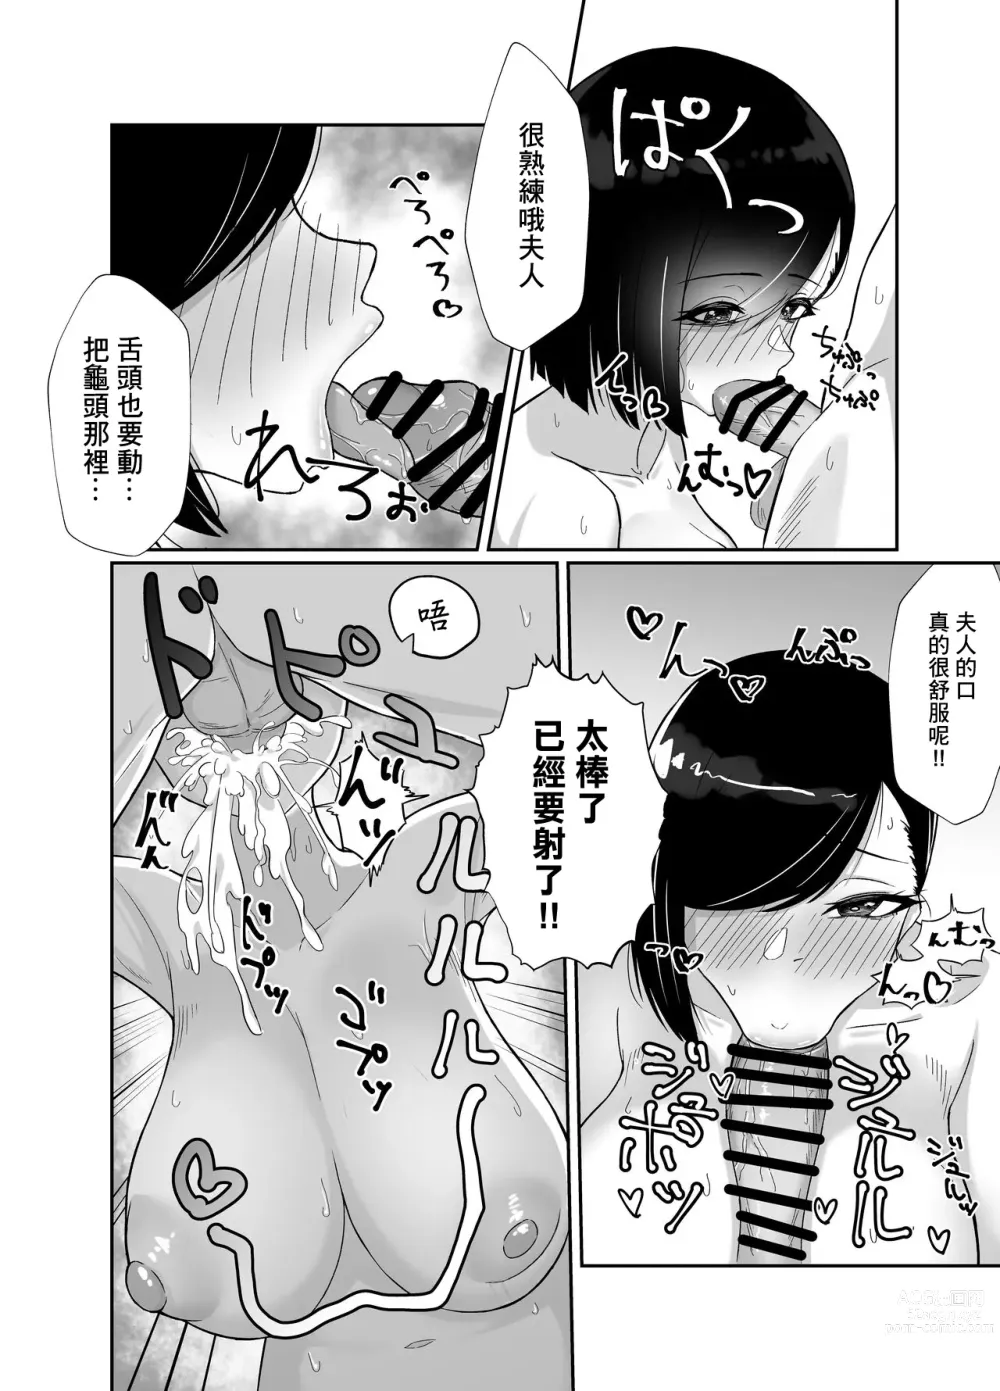 Page 14 of doujinshi 向在荒郊野嶺遇到的不知人世險惡的巨乳人妻灌輸虛假禮節SEX的故事